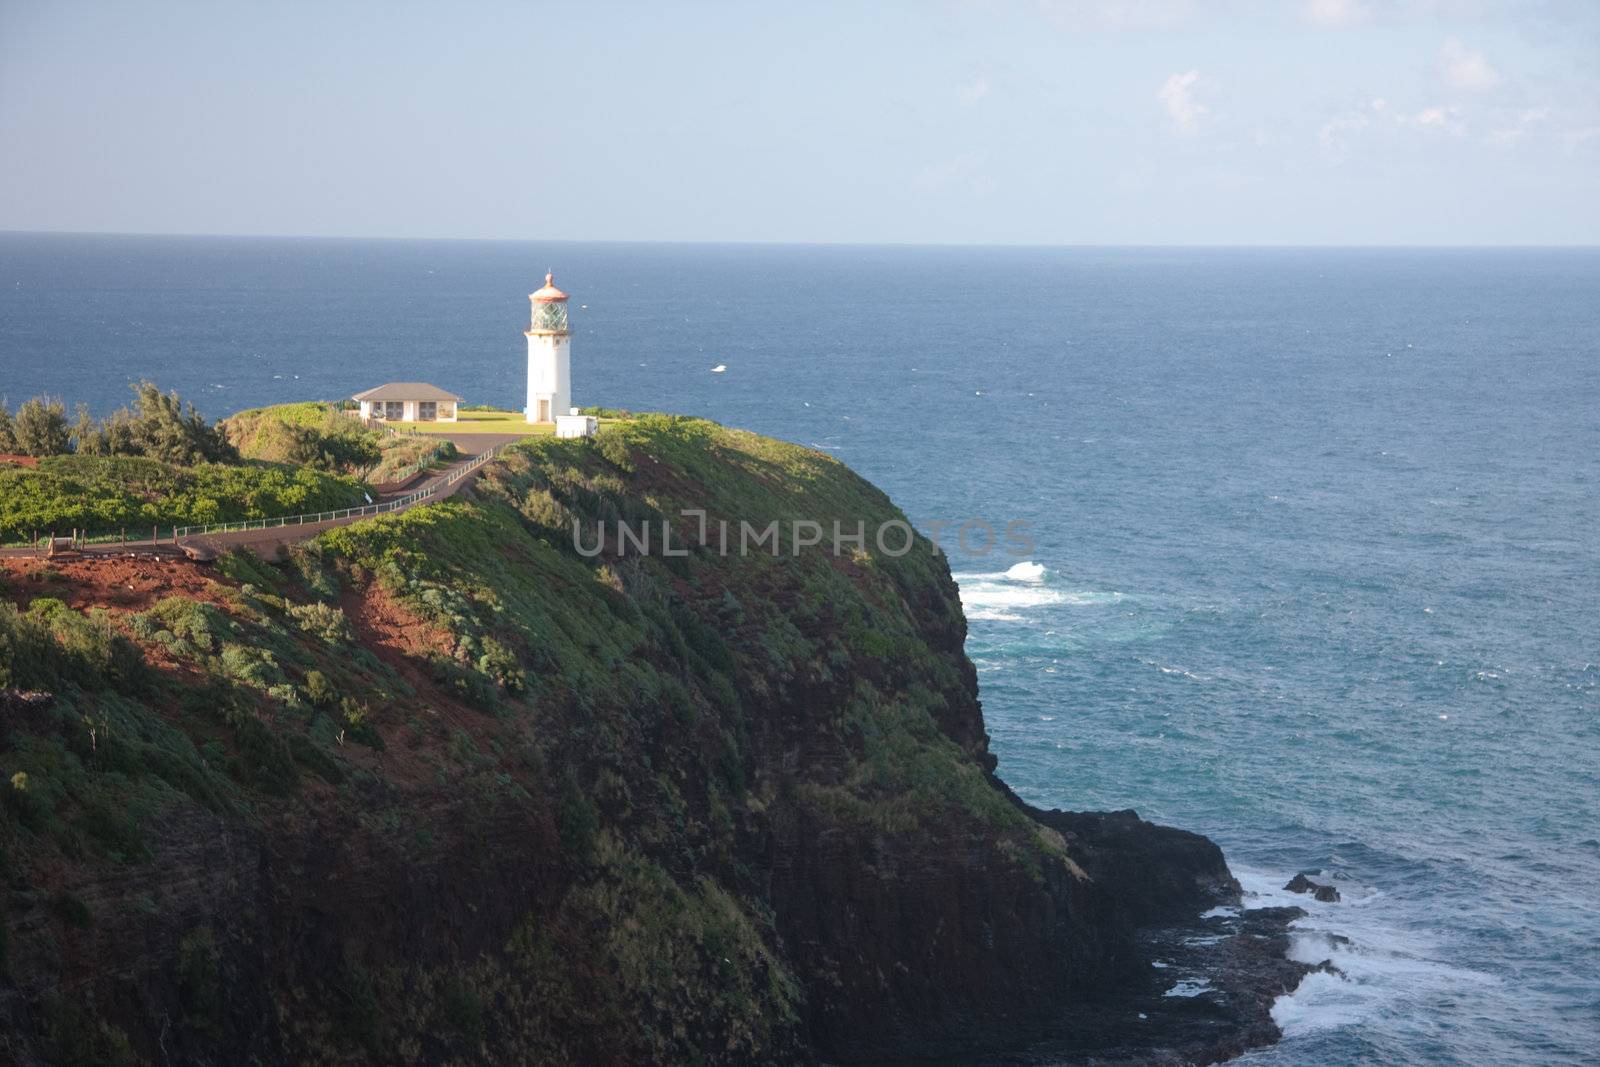 CLose up of Kilauea Lighthouse off the coast of Kauai